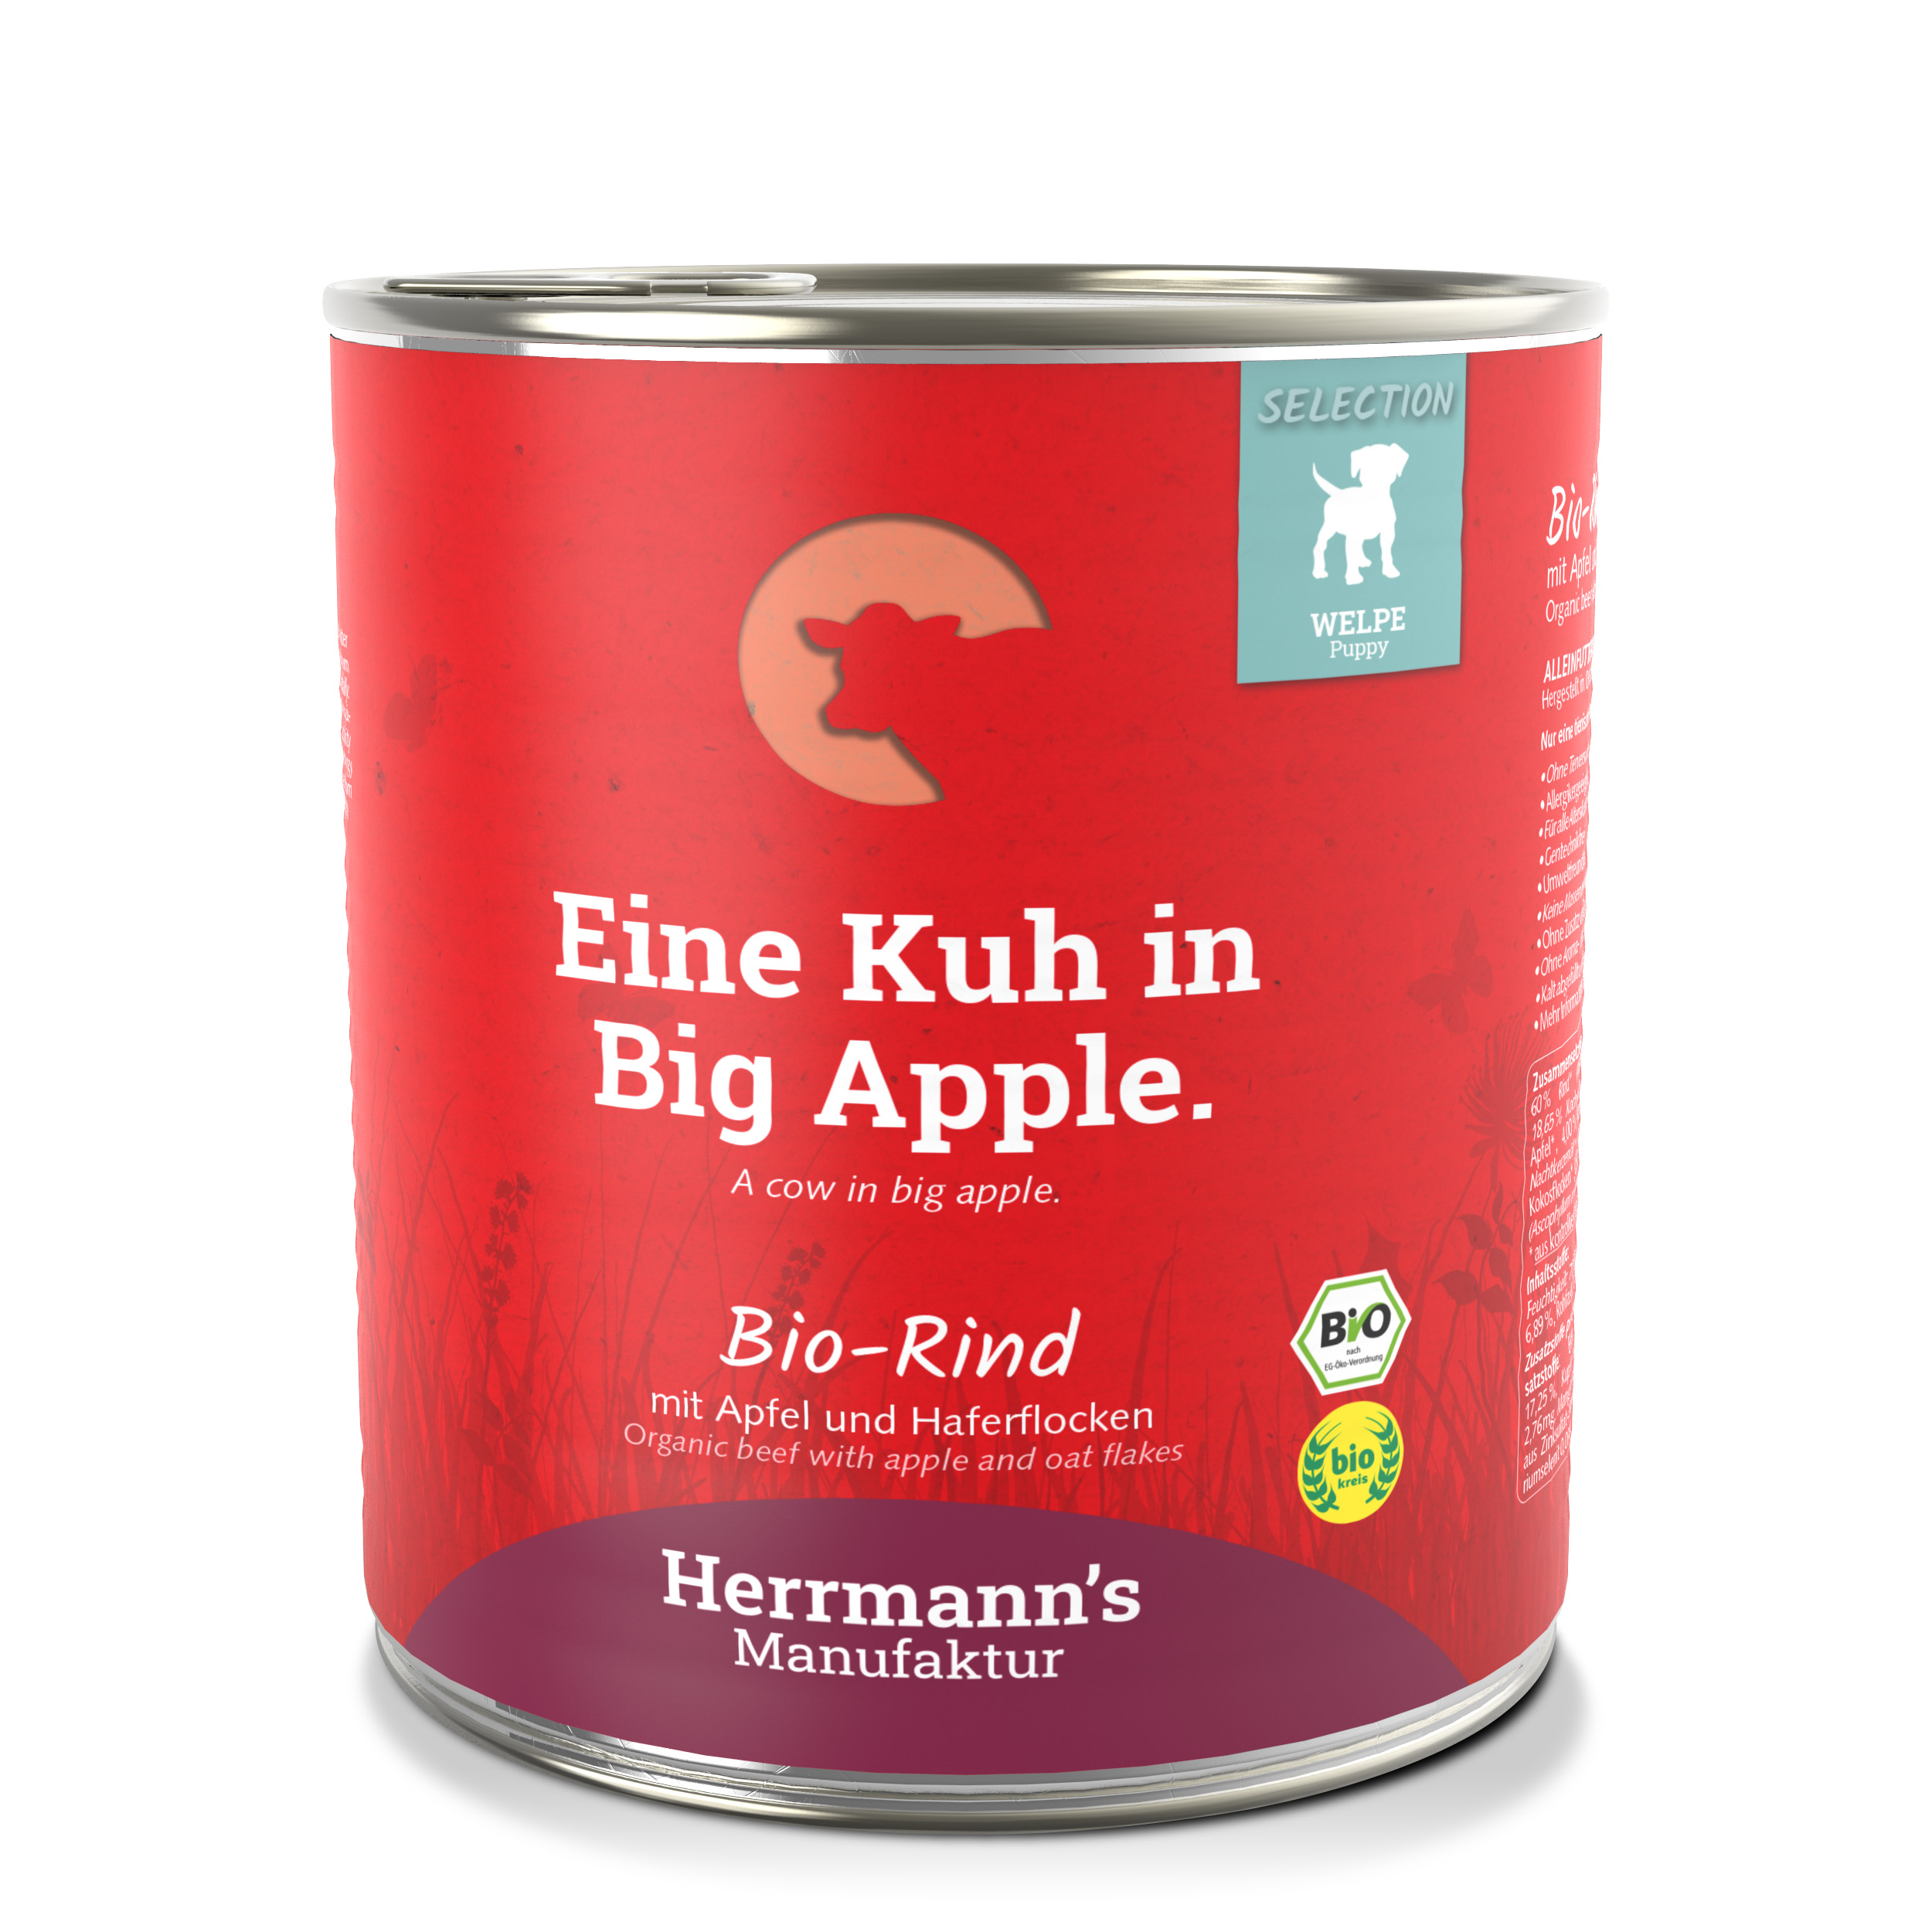 6er-VE Hundefutter Welpe: Bio Rind mit Apfel und Haferflocken 800g Herrmann's - Bild 1